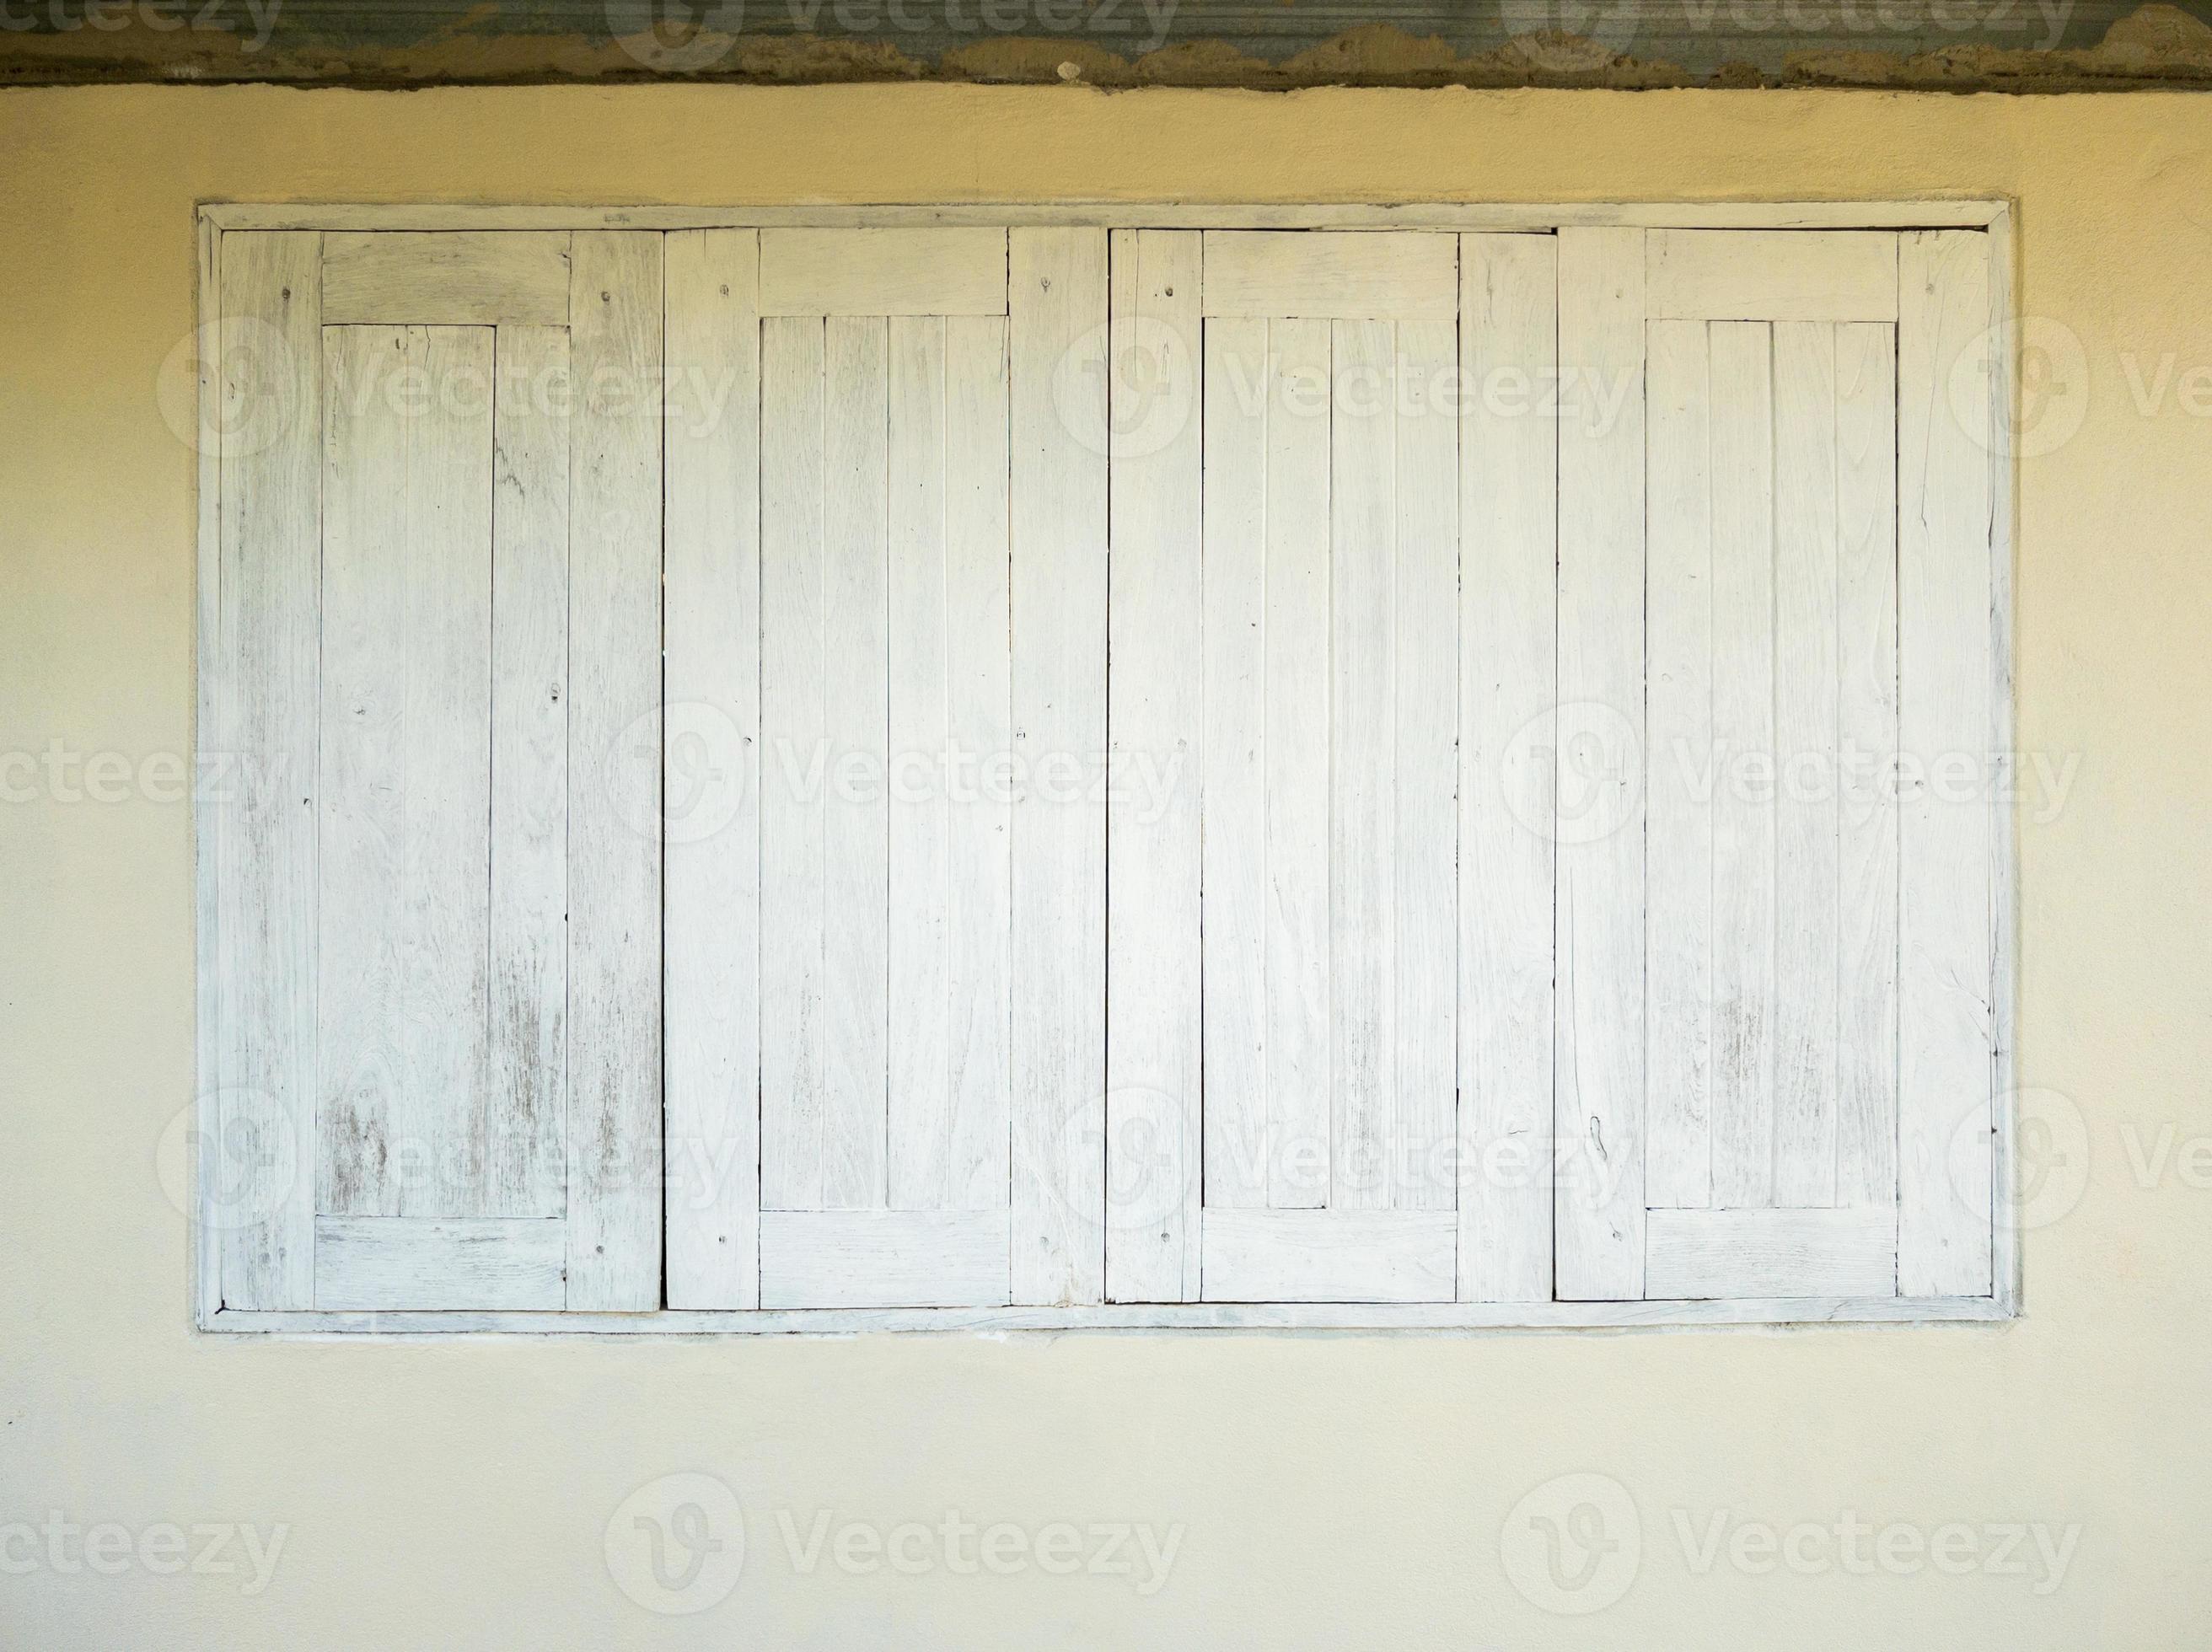 Curso de colisión función Fraude las ventanas de madera pintadas de blanco están cerradas de la casa local.  14041615 Foto de stock en Vecteezy